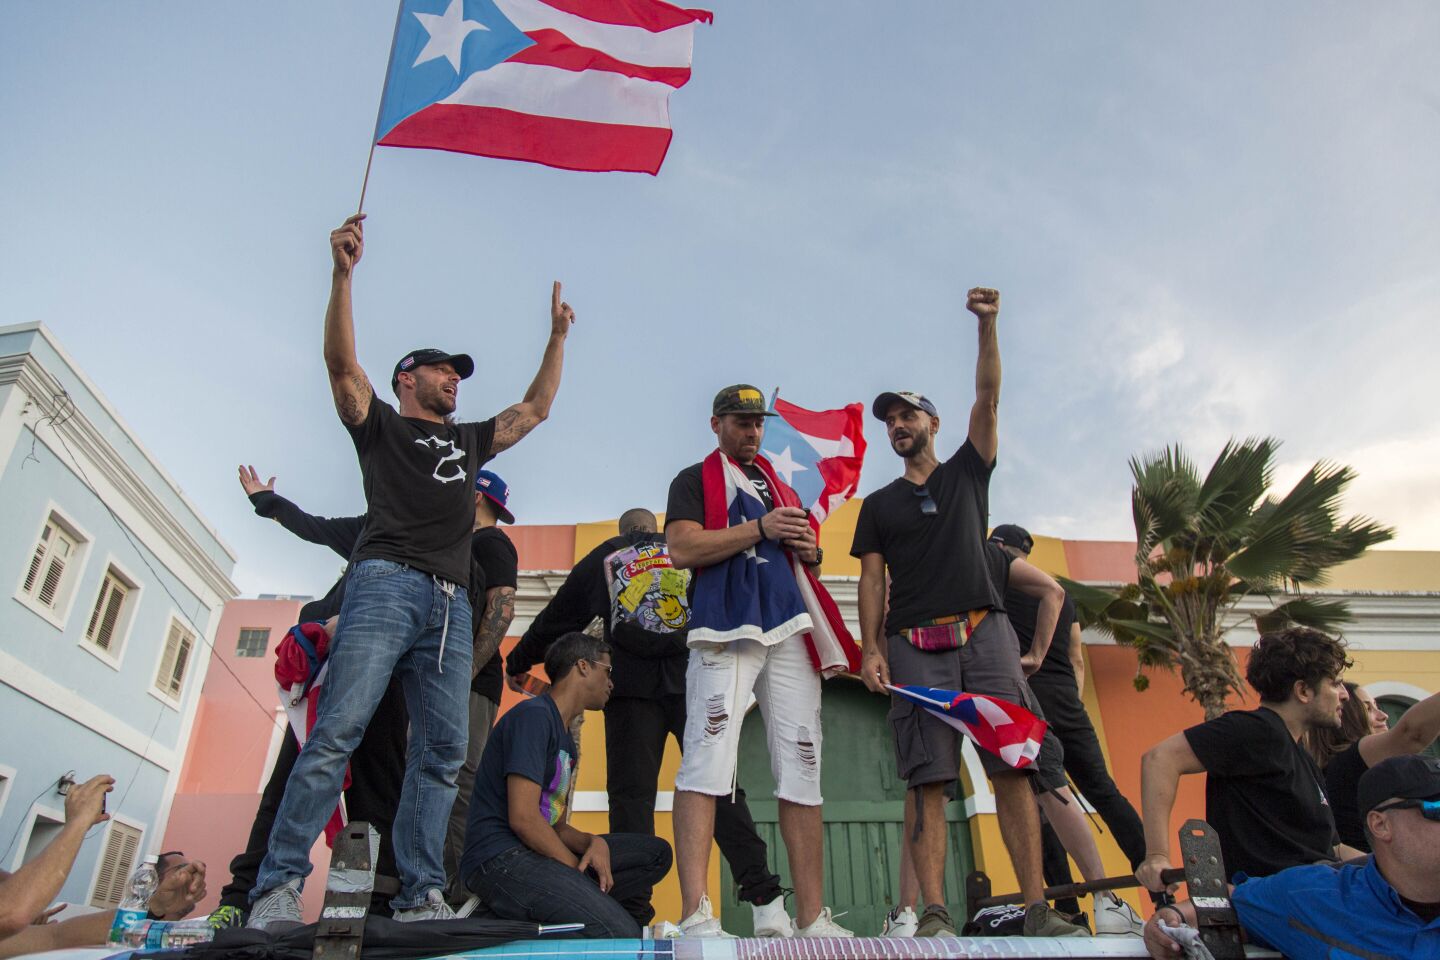 Singer Ricky Martin, left, waves the Puerto Rican flag during a protest against Gov. Ricardo Rosello in San Juan.